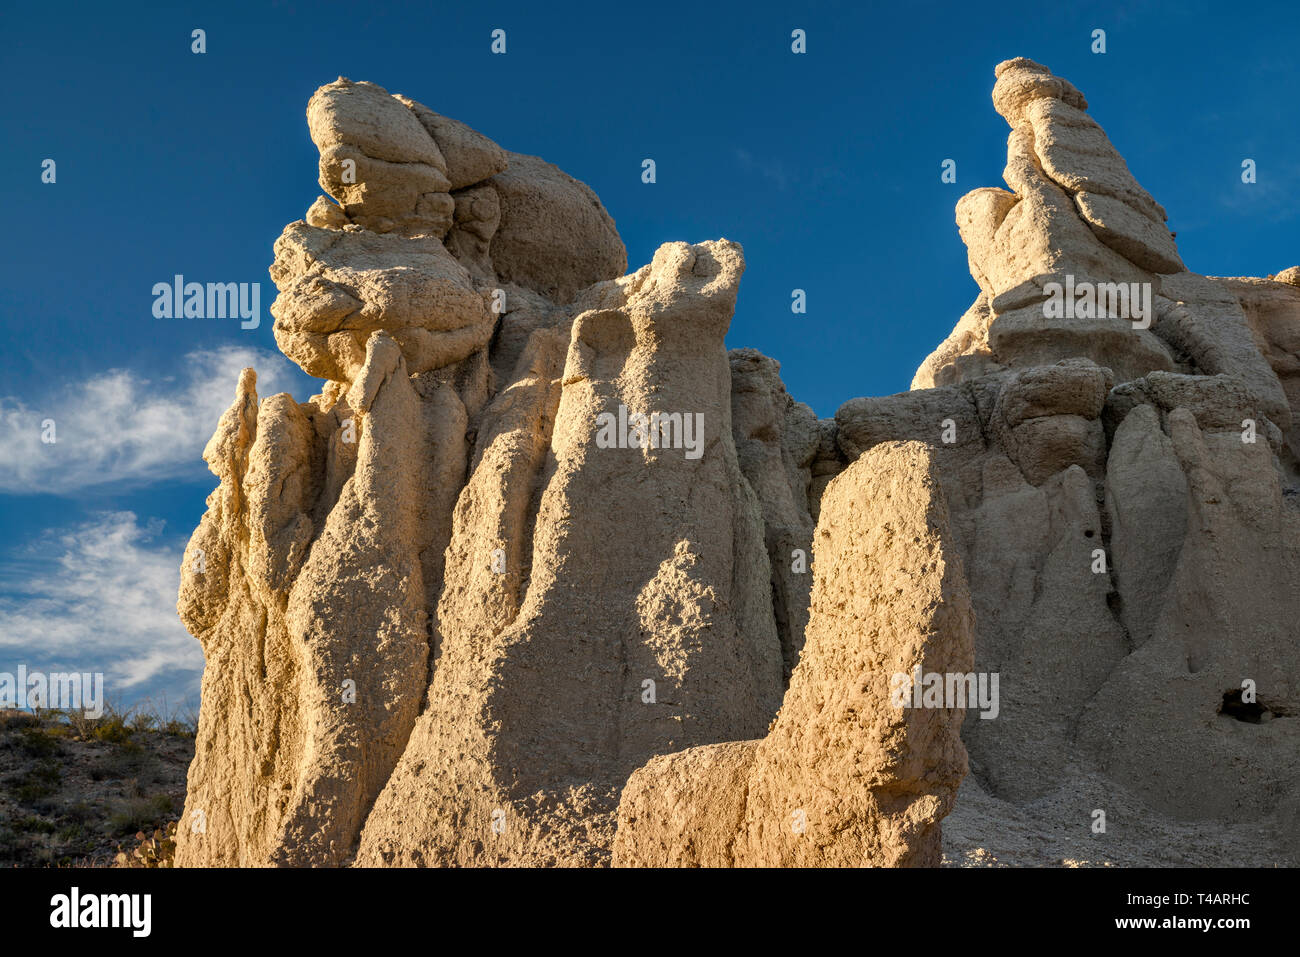 La roche de tuf formations rocheuses le long du chemin River et Rio Grande, Big Bend Ranch State Park, Texas, États-Unis Banque D'Images